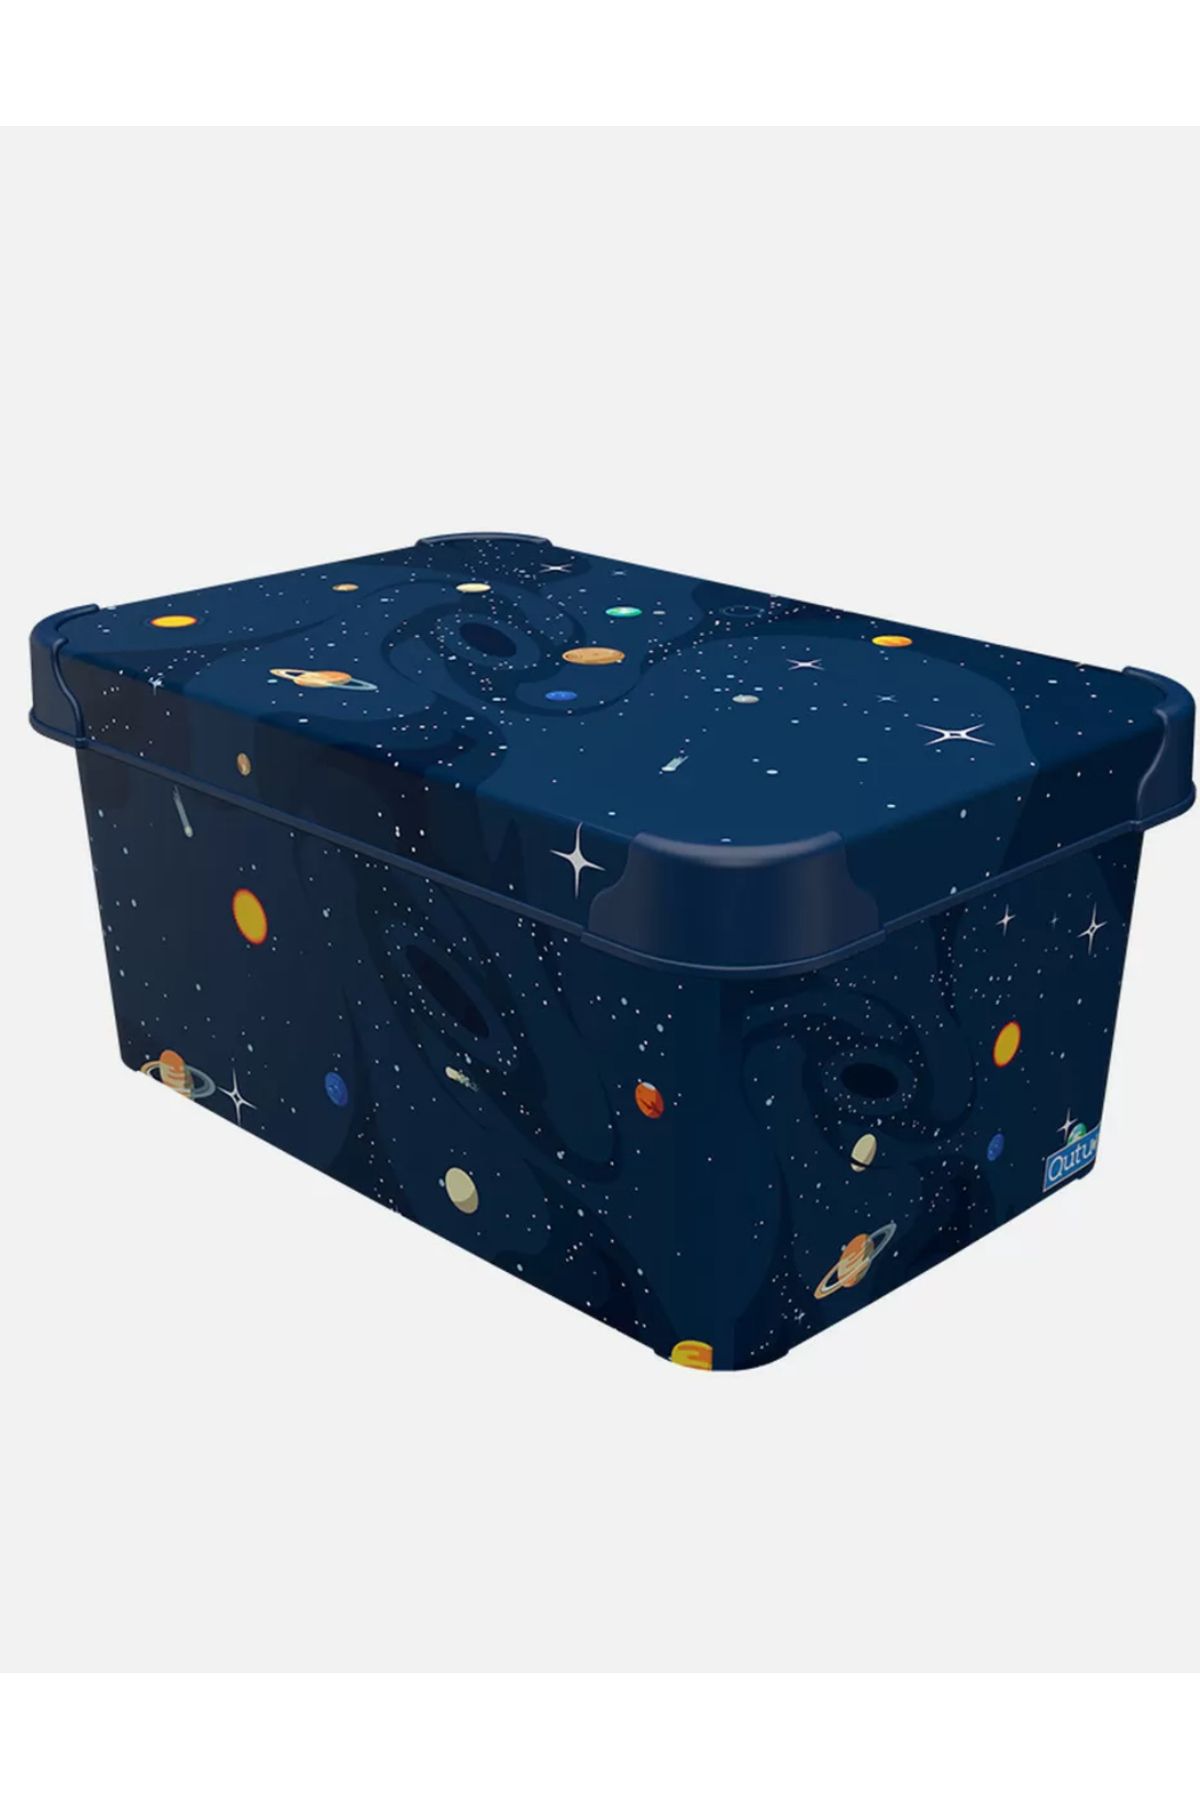 QUTU 5 Lt Planets Gezegenler 28,5x19x13 Kapaklı Saklama Kutusu Style Box Düzenleyici Dekoratif Kutu